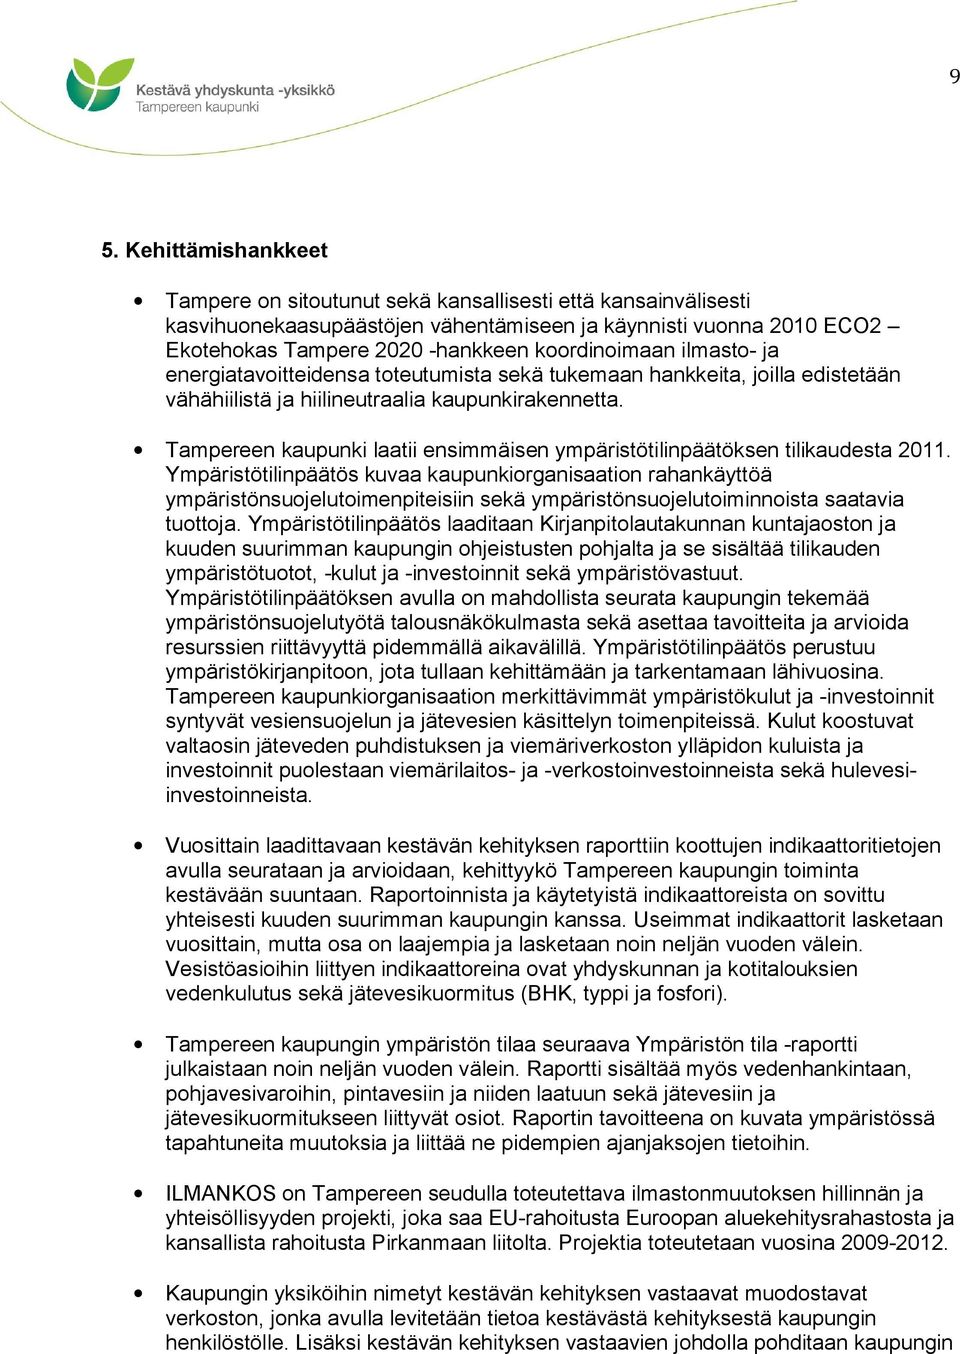 Tampereen kaupunki laatii ensimmäisen ympäristötilinpäätöksen tilikaudesta 2011.